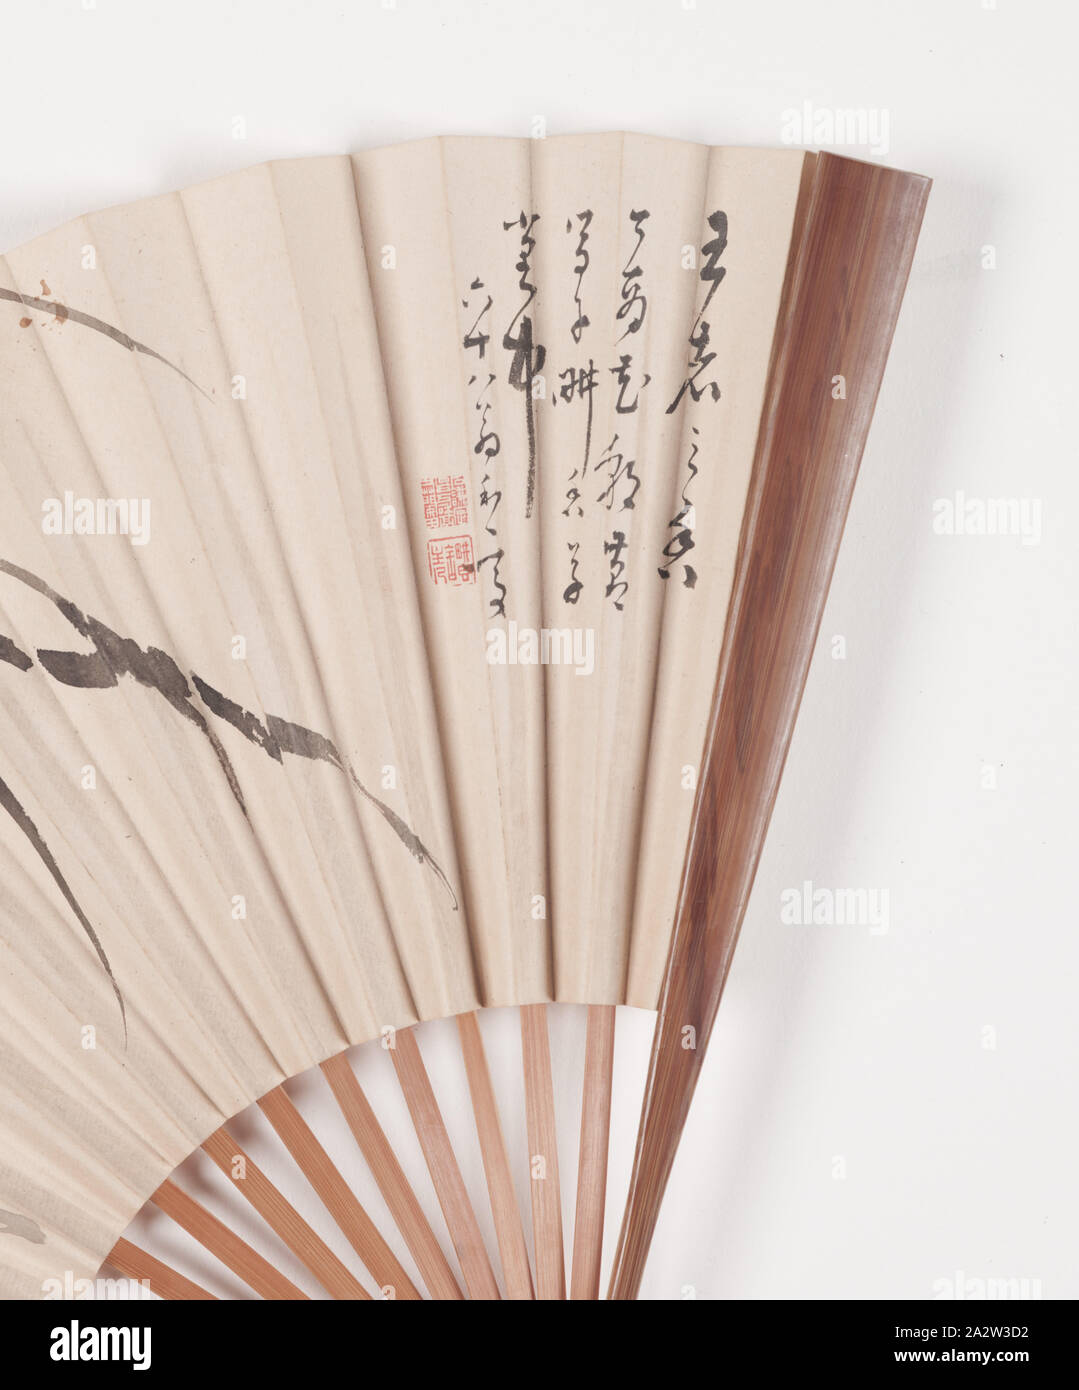 Orchid et Poème, Taki Katei (japonais, 1830-1901), fin du xixe siècle, encre sur papier, bois, 9-1/2 x 15-1/8 po. (Ouvert), signé par l'artiste : Rokuju hachi o, Katei (68 ans, vieil homme Katei) deux joints d'artiste, Art asiatique Banque D'Images